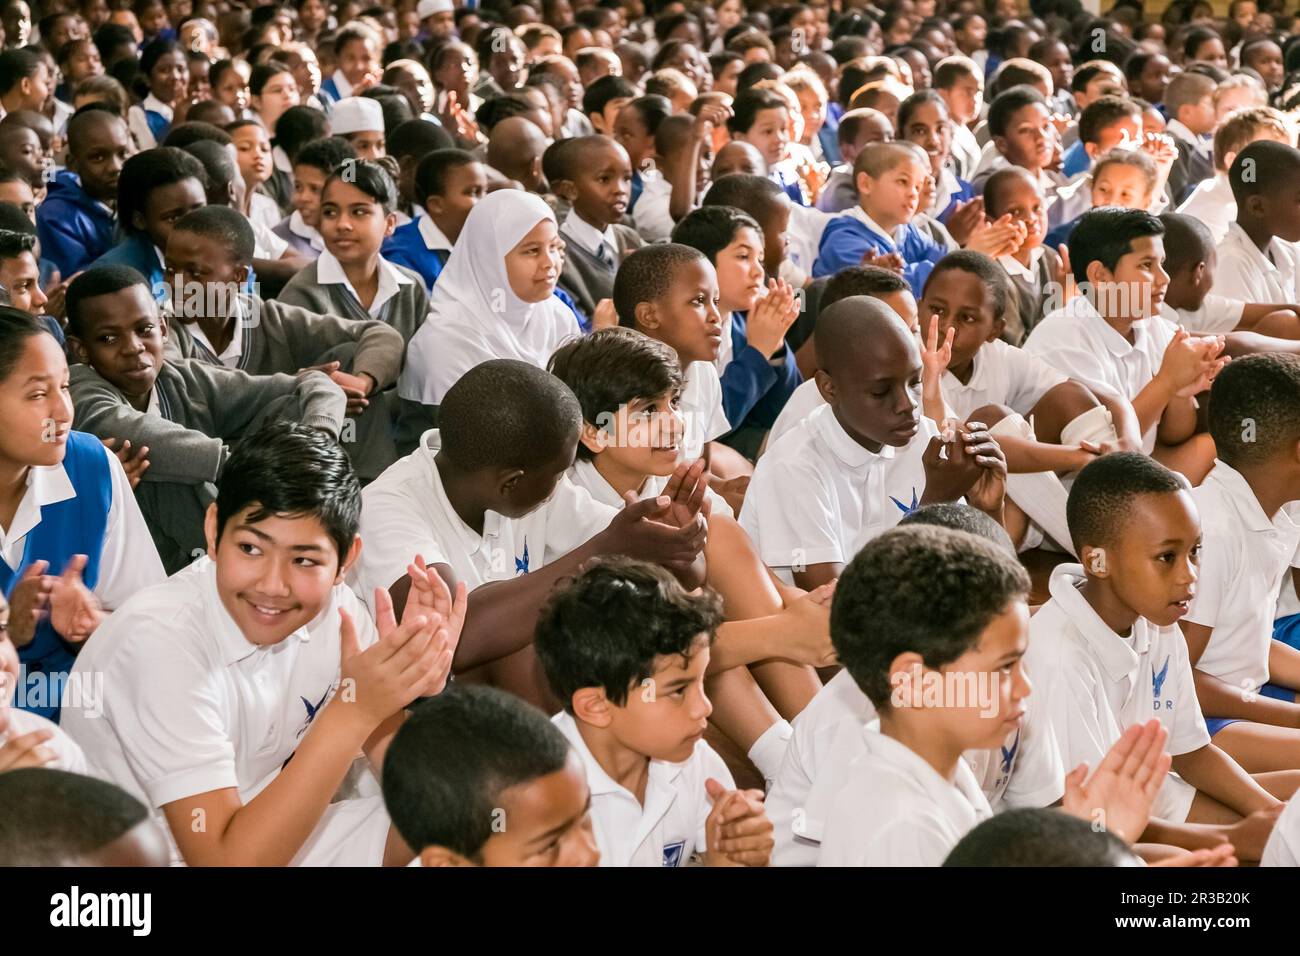 Giovani bambini di scuola diversi seduti sul pavimento in un'assemblea mattutina Foto Stock